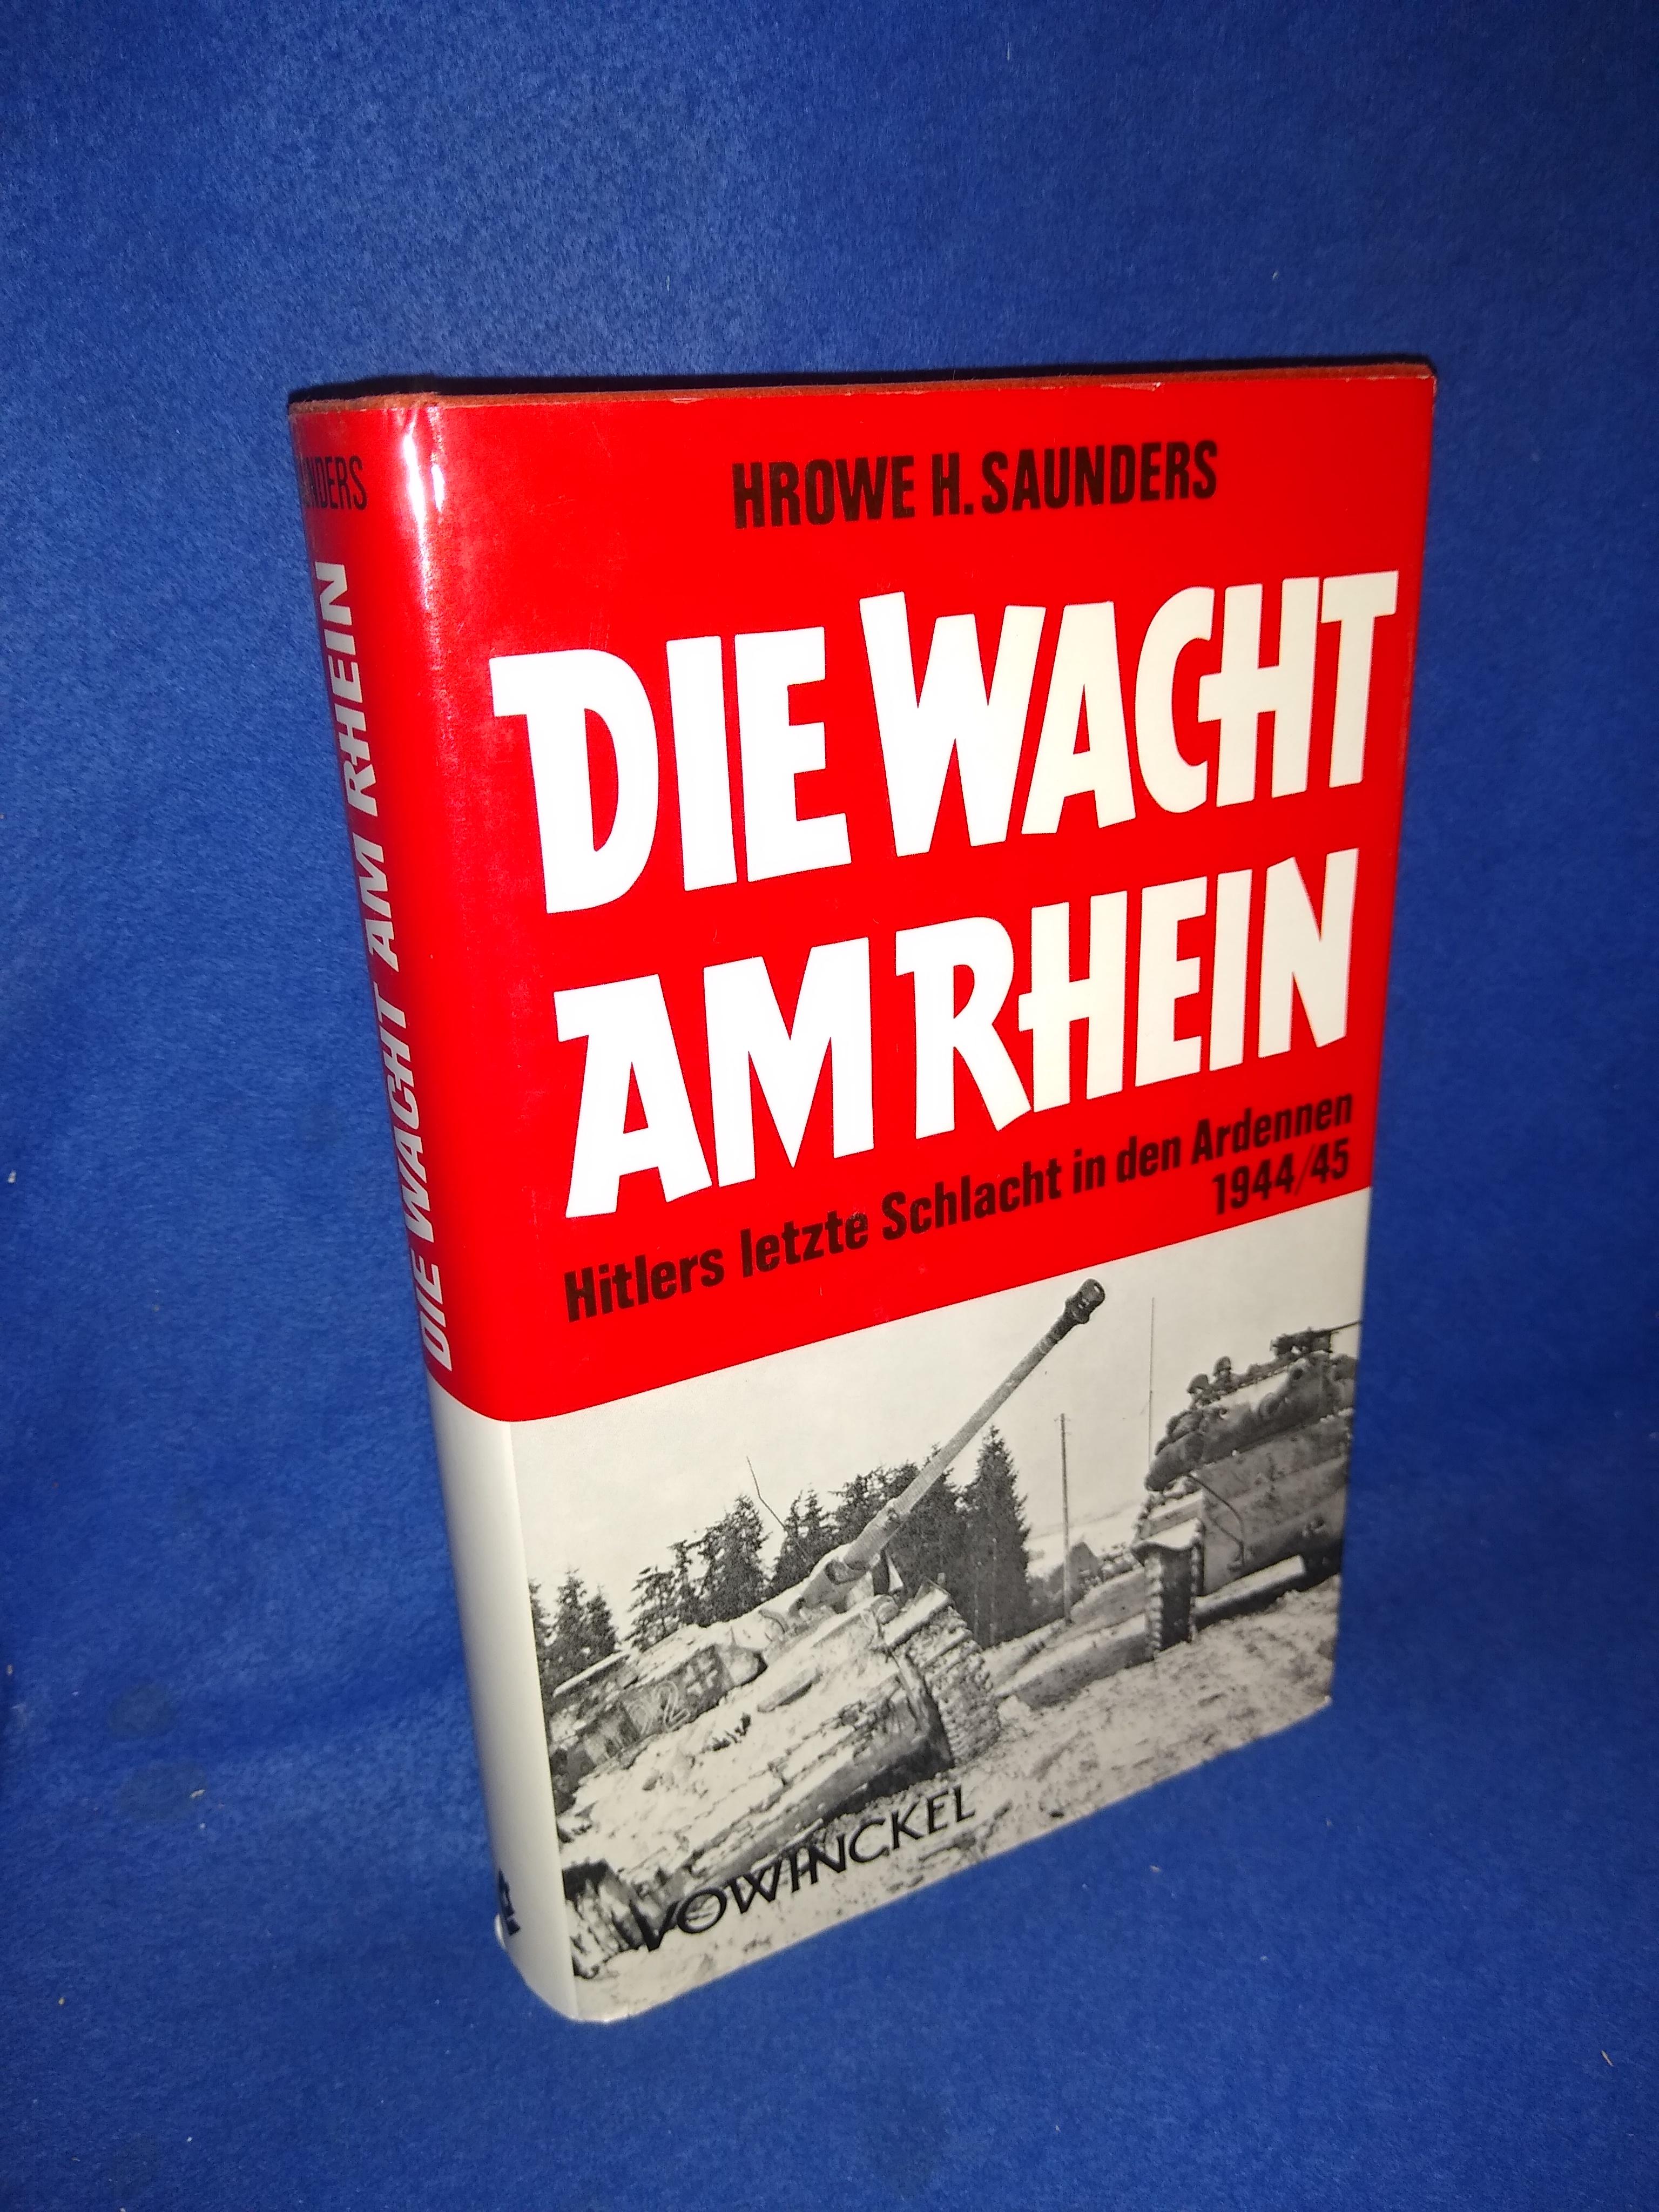 Die Wacht am Rhein: Hitlers letzte Schlacht in den Ardennen 1944/45.